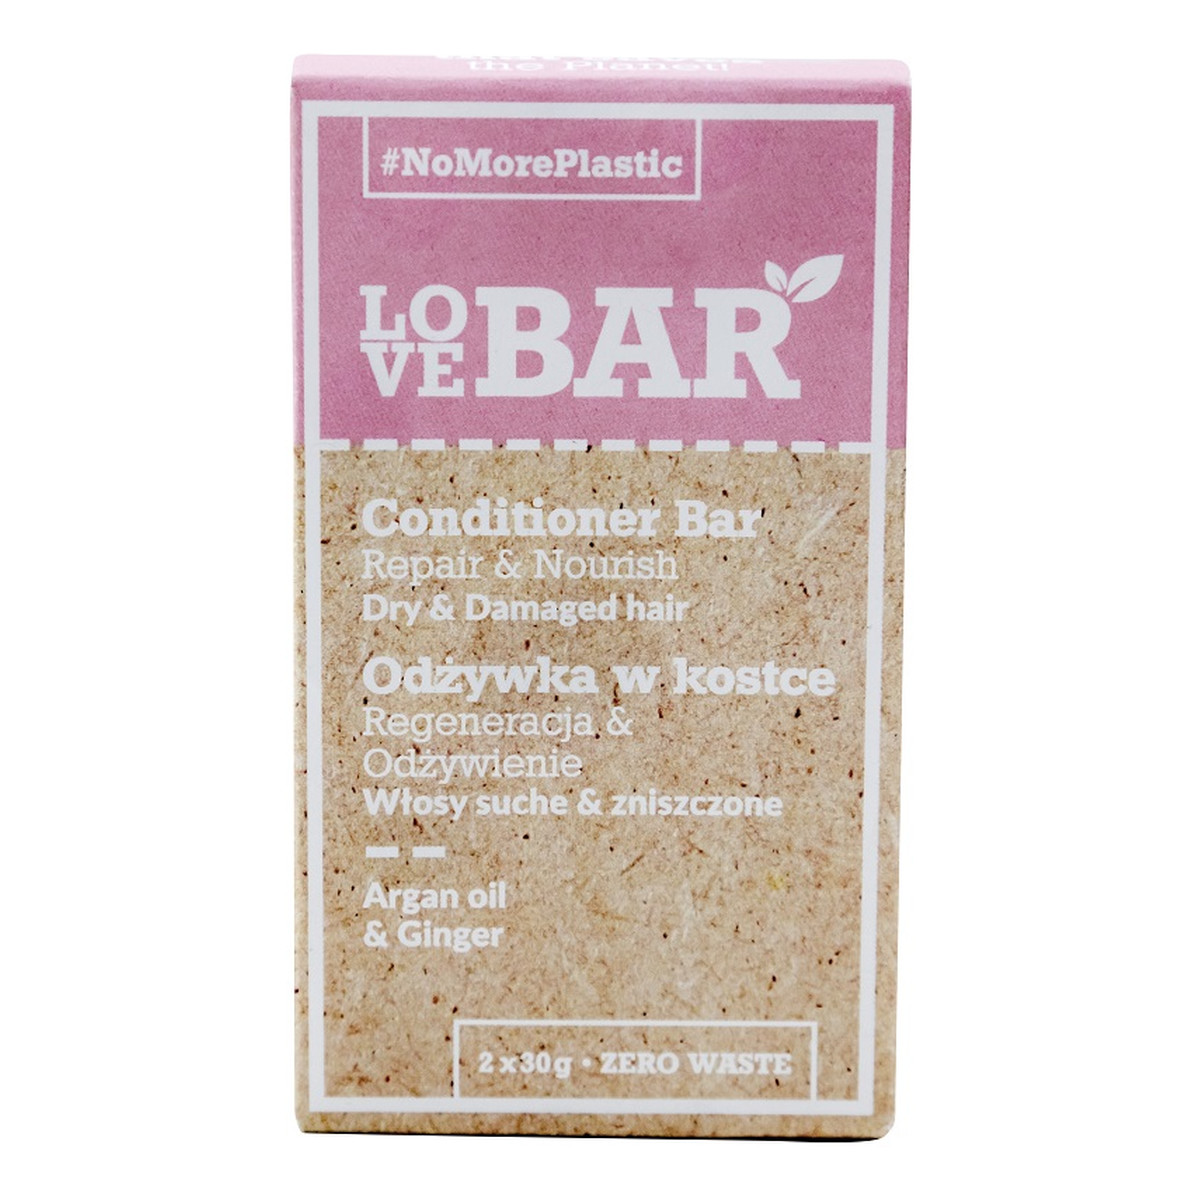 Love Bar Conditioner Bar odżywka w kostce do włosów suchych i zniszczonych Olej Arganowy & Imbir 2x30g 60g